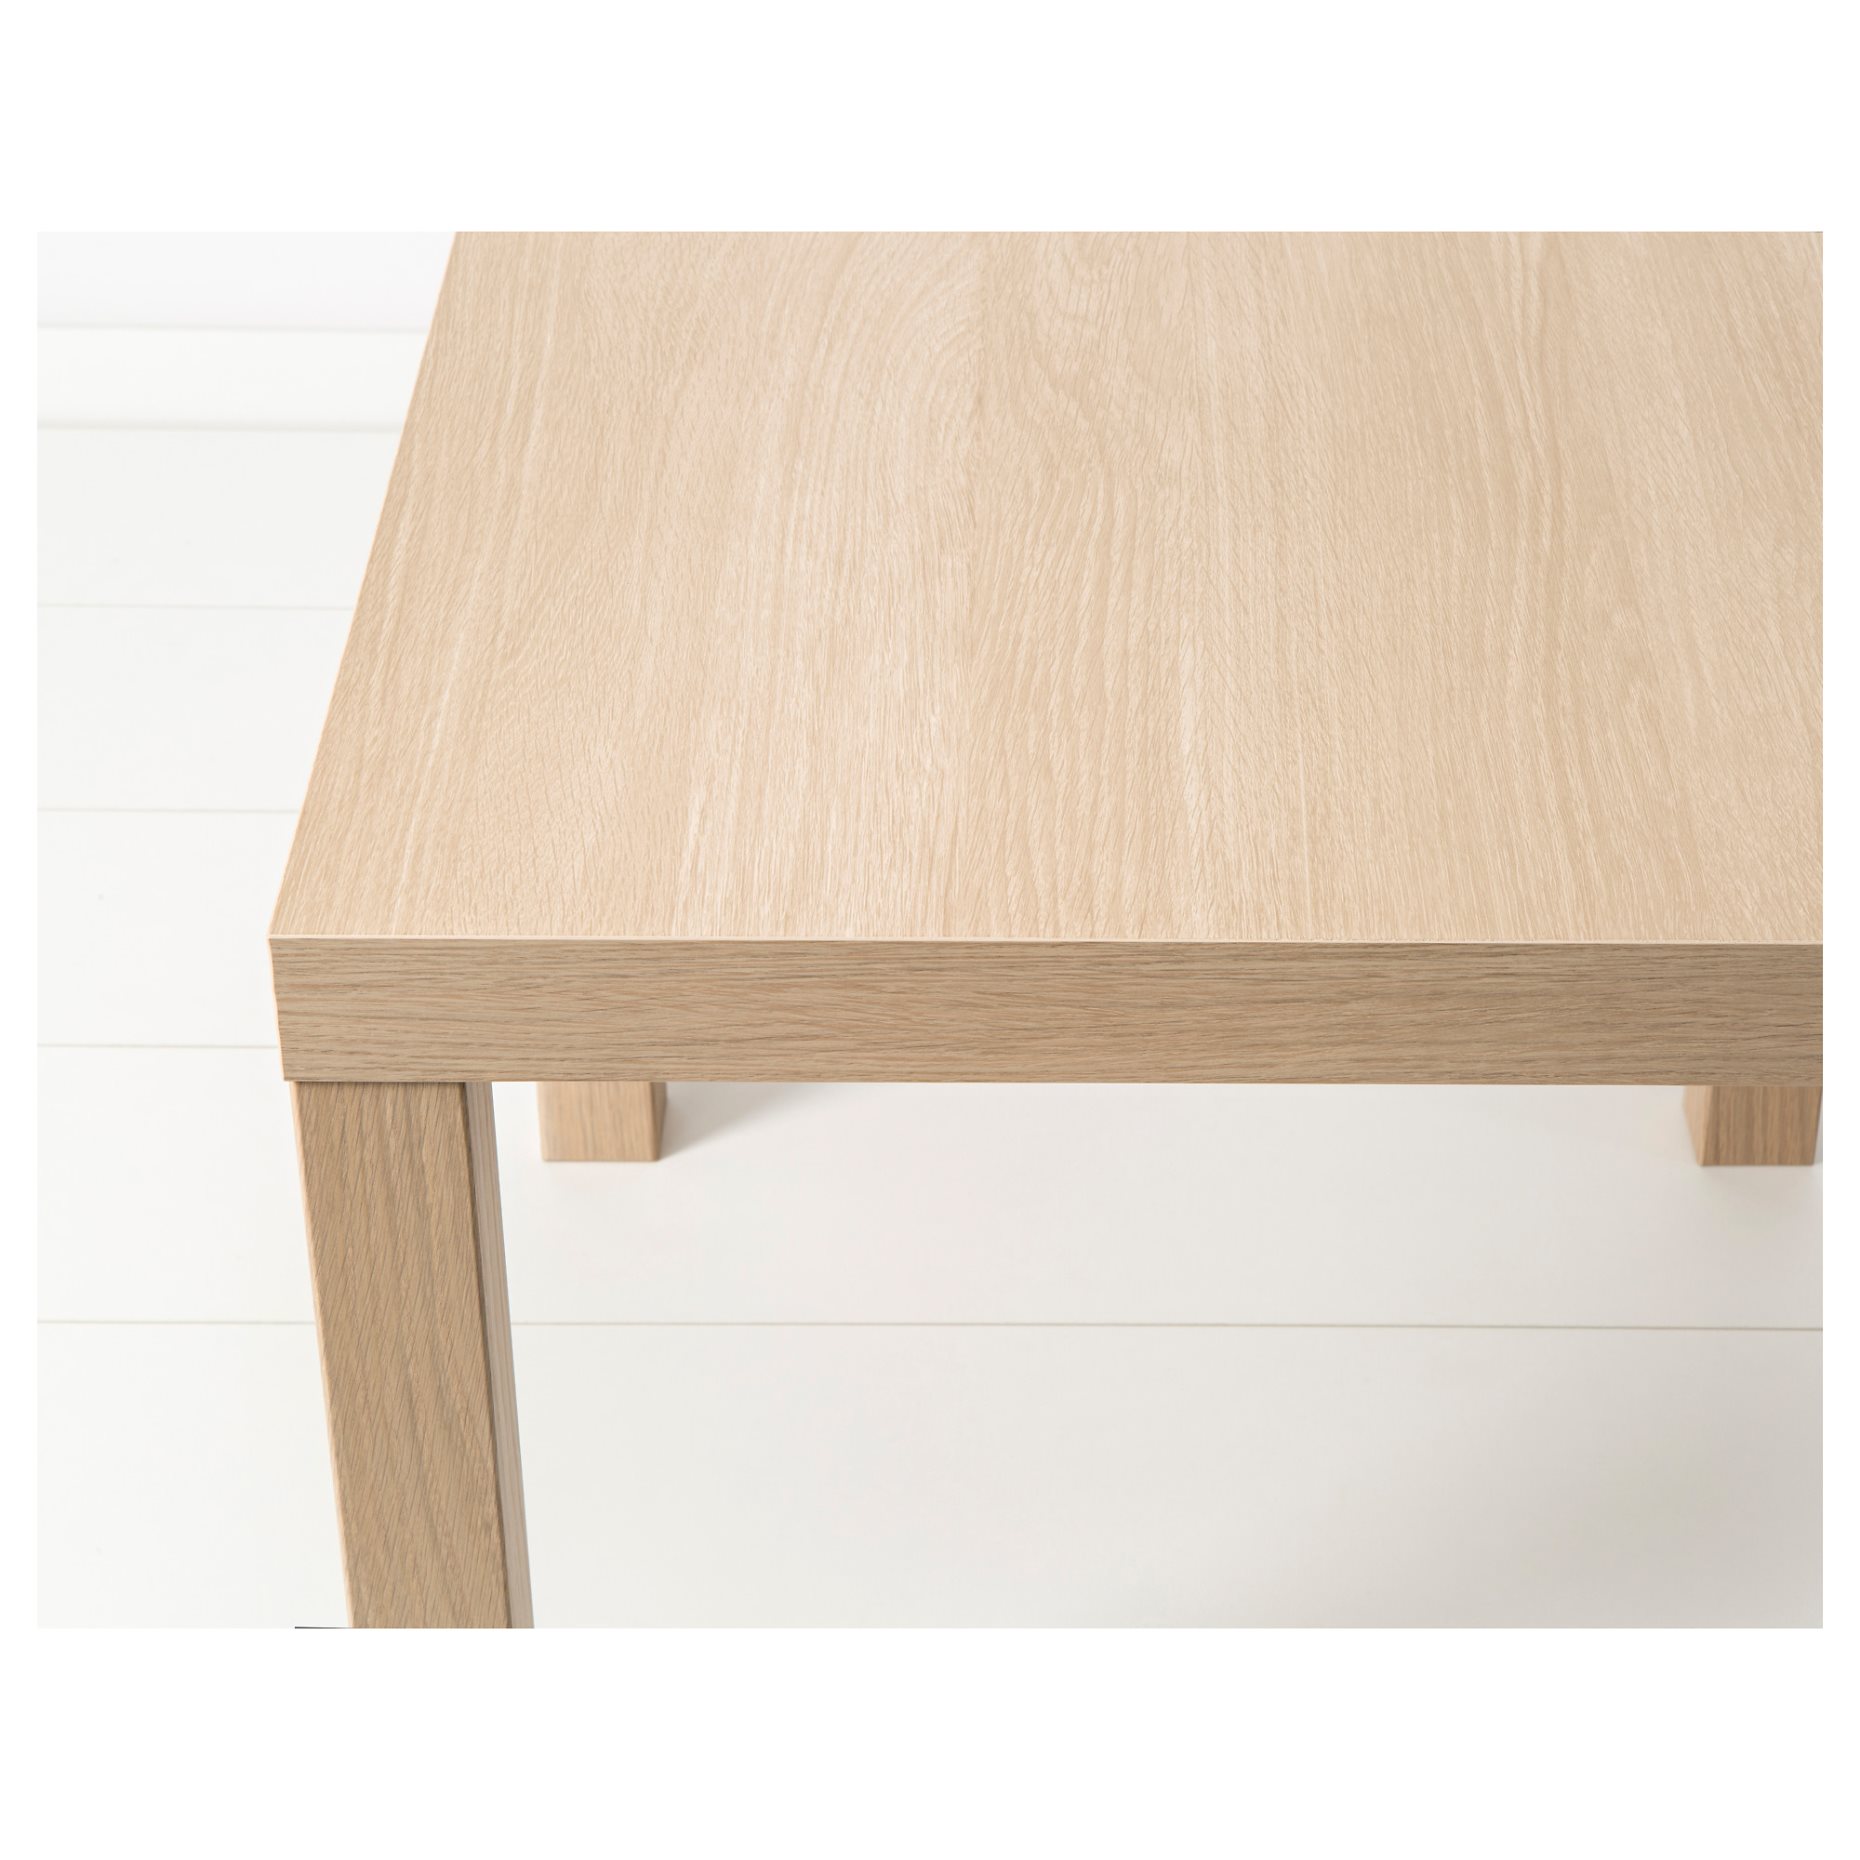 LACK, side table, 55x55 cm, 703.190.28